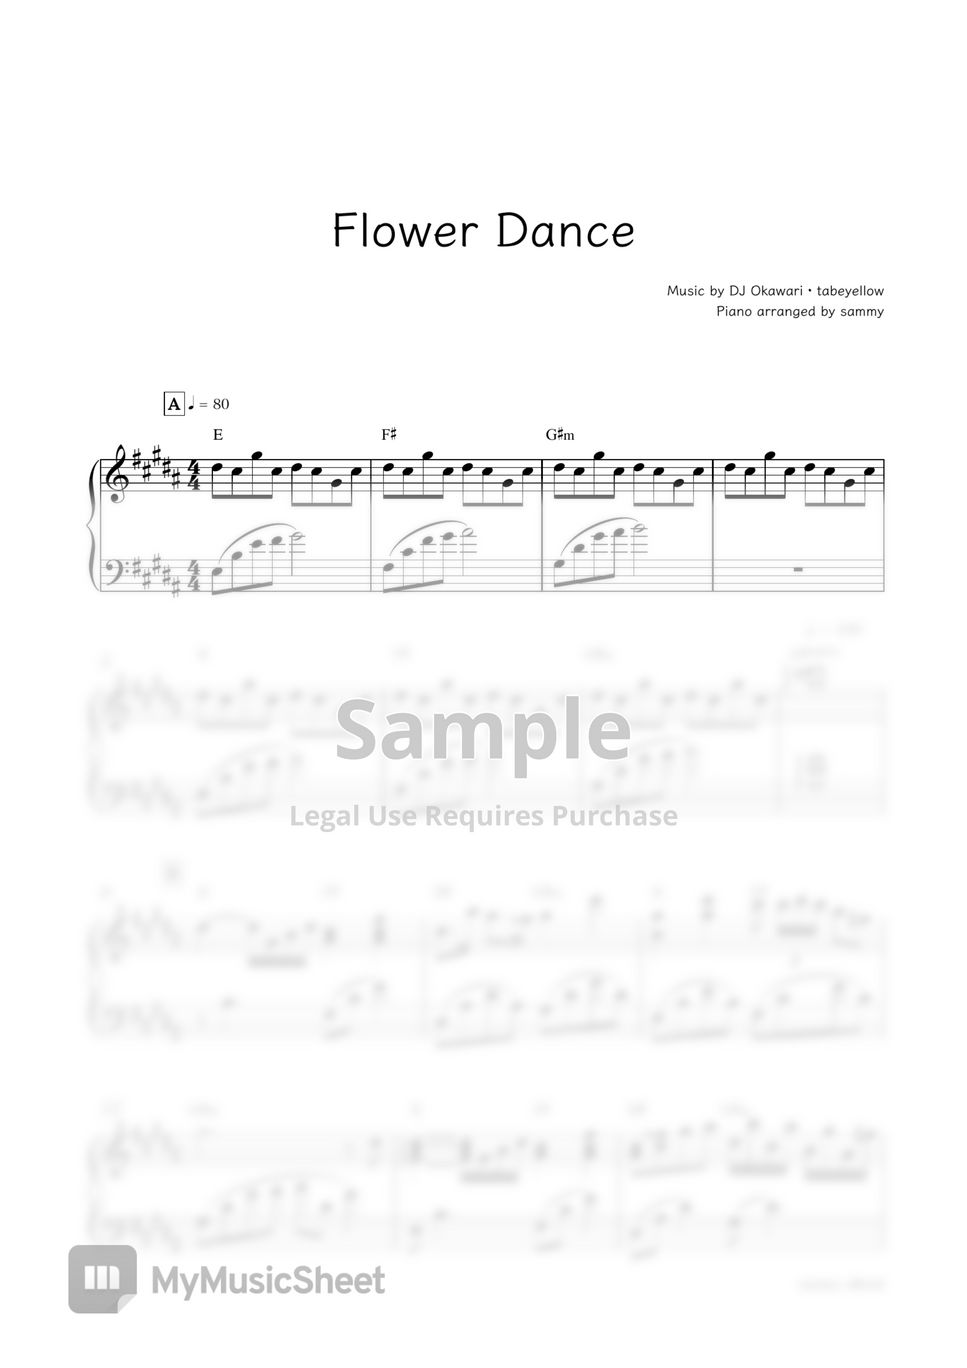 DJ Okawari (DJ 오카와리) - 플라워 댄스 (Flower Dance) by sammy